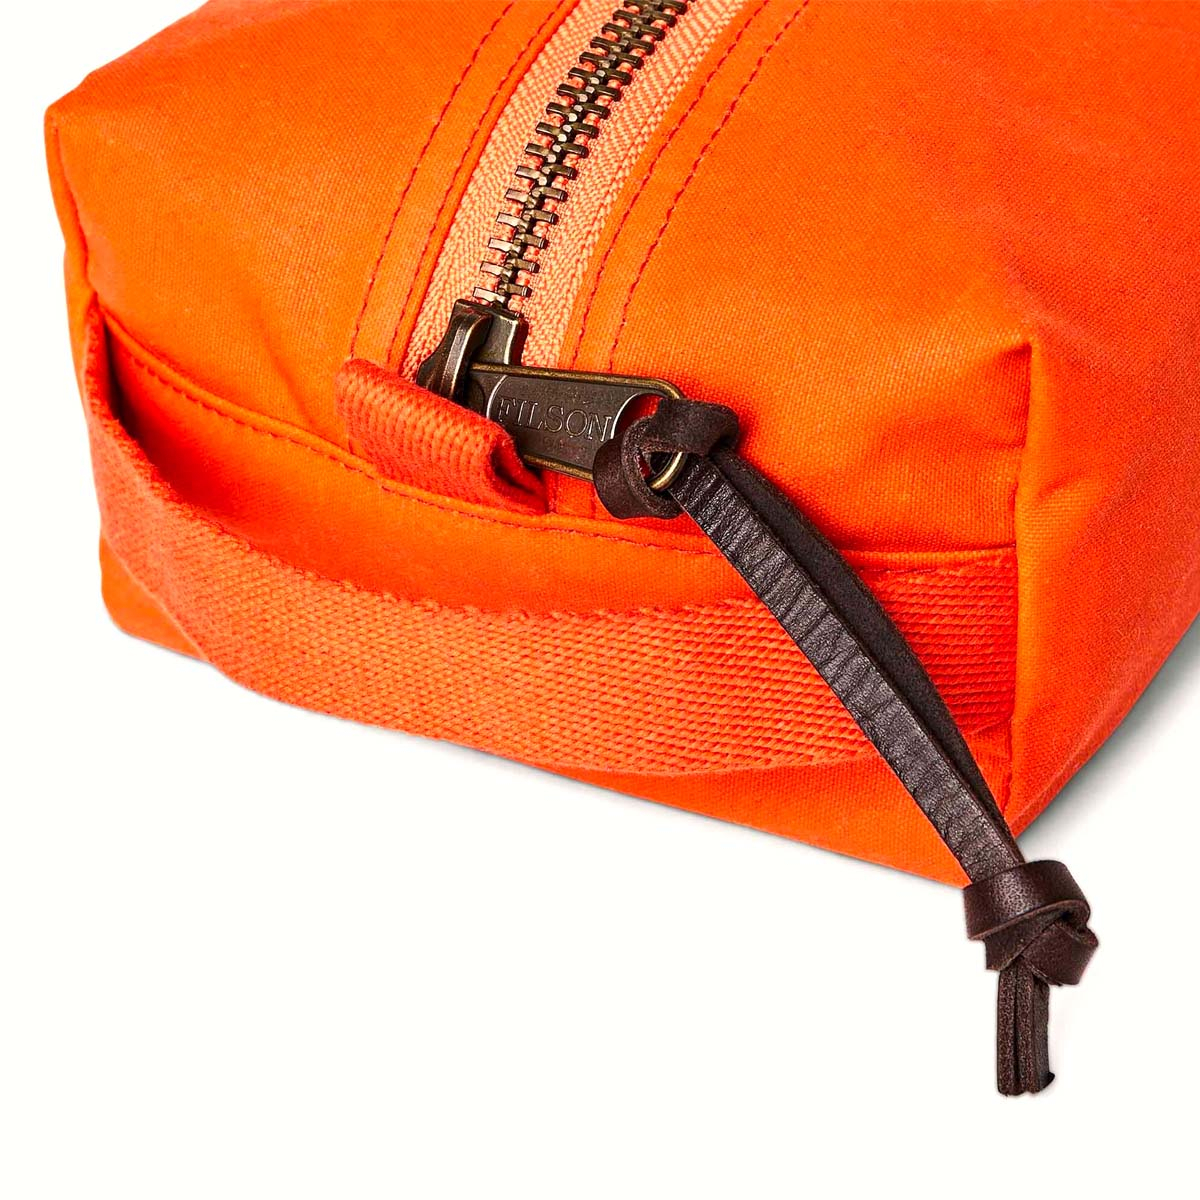 Filson Tin Cloth Travel Kit Flame, een compacte, lichte en stevige dopp kit gemaakt met historische materialen en modern design